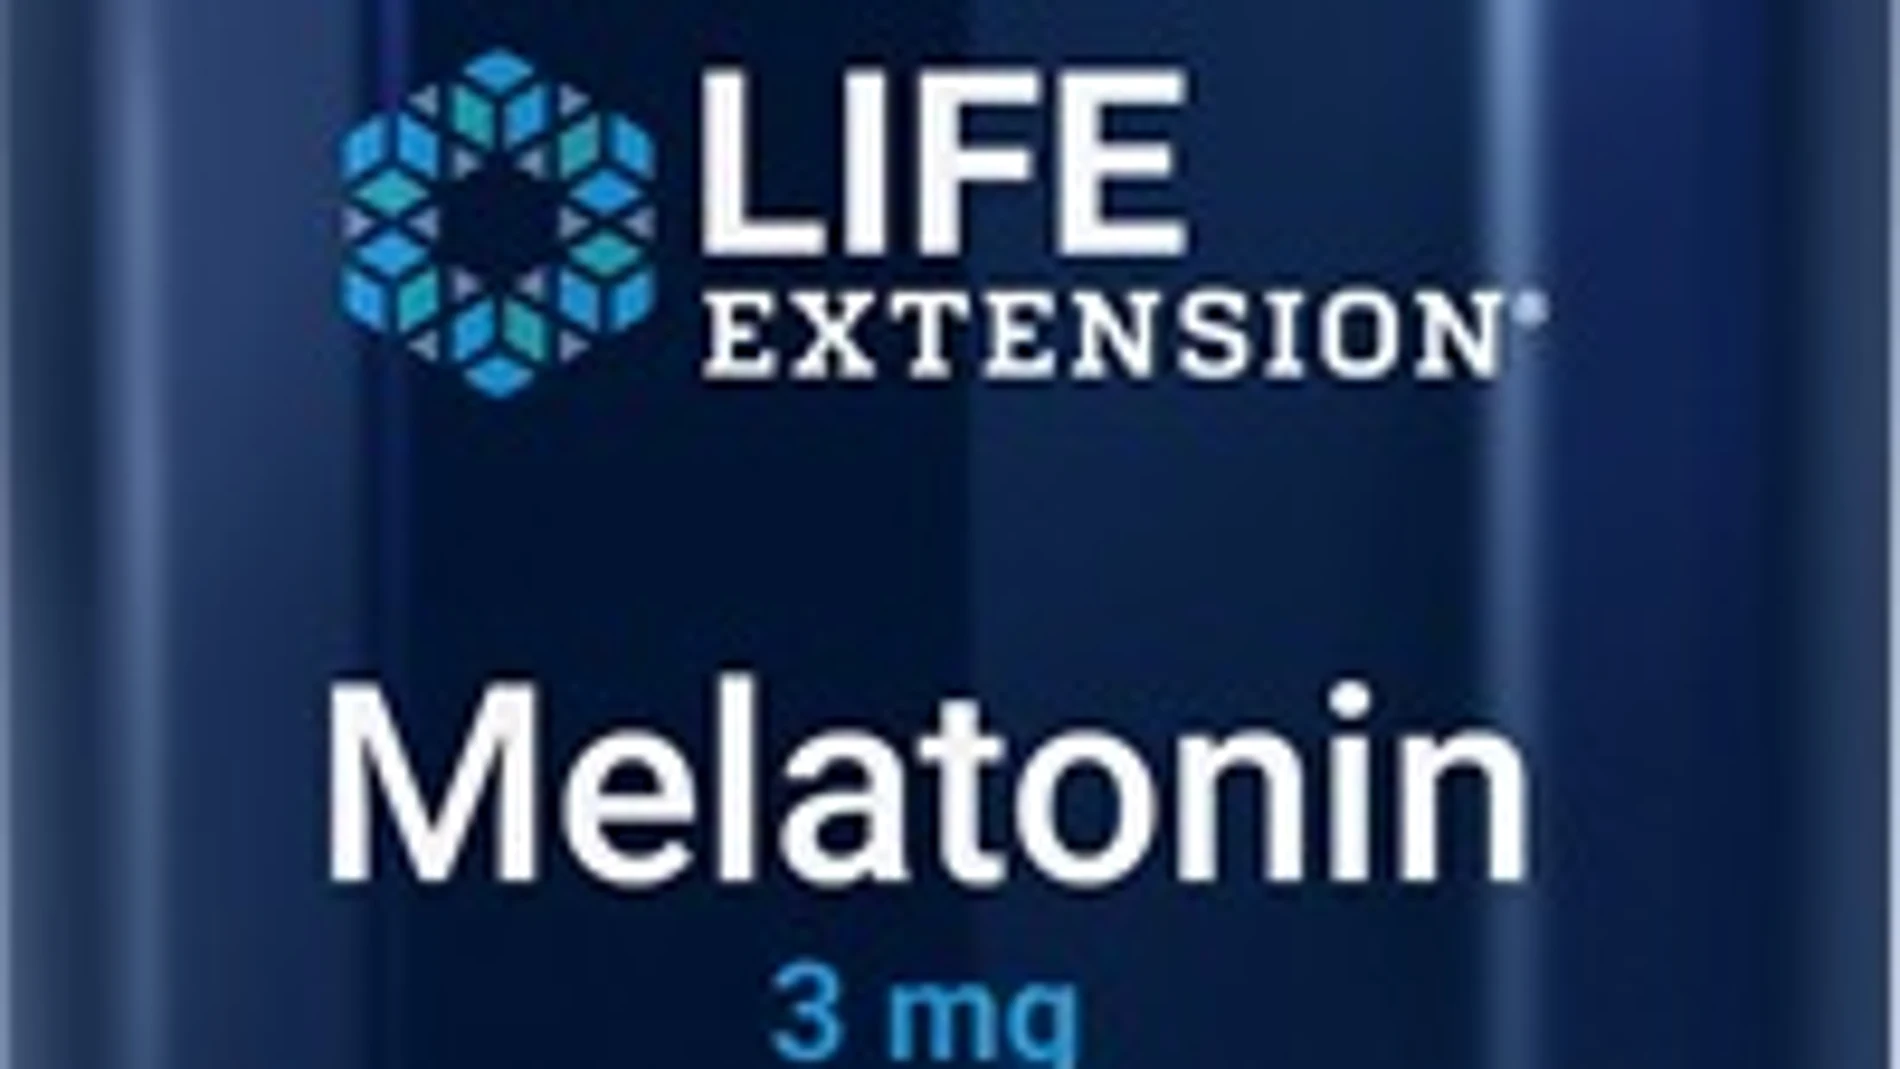 Imagen del producto Melatonin 3 mg cápsulas